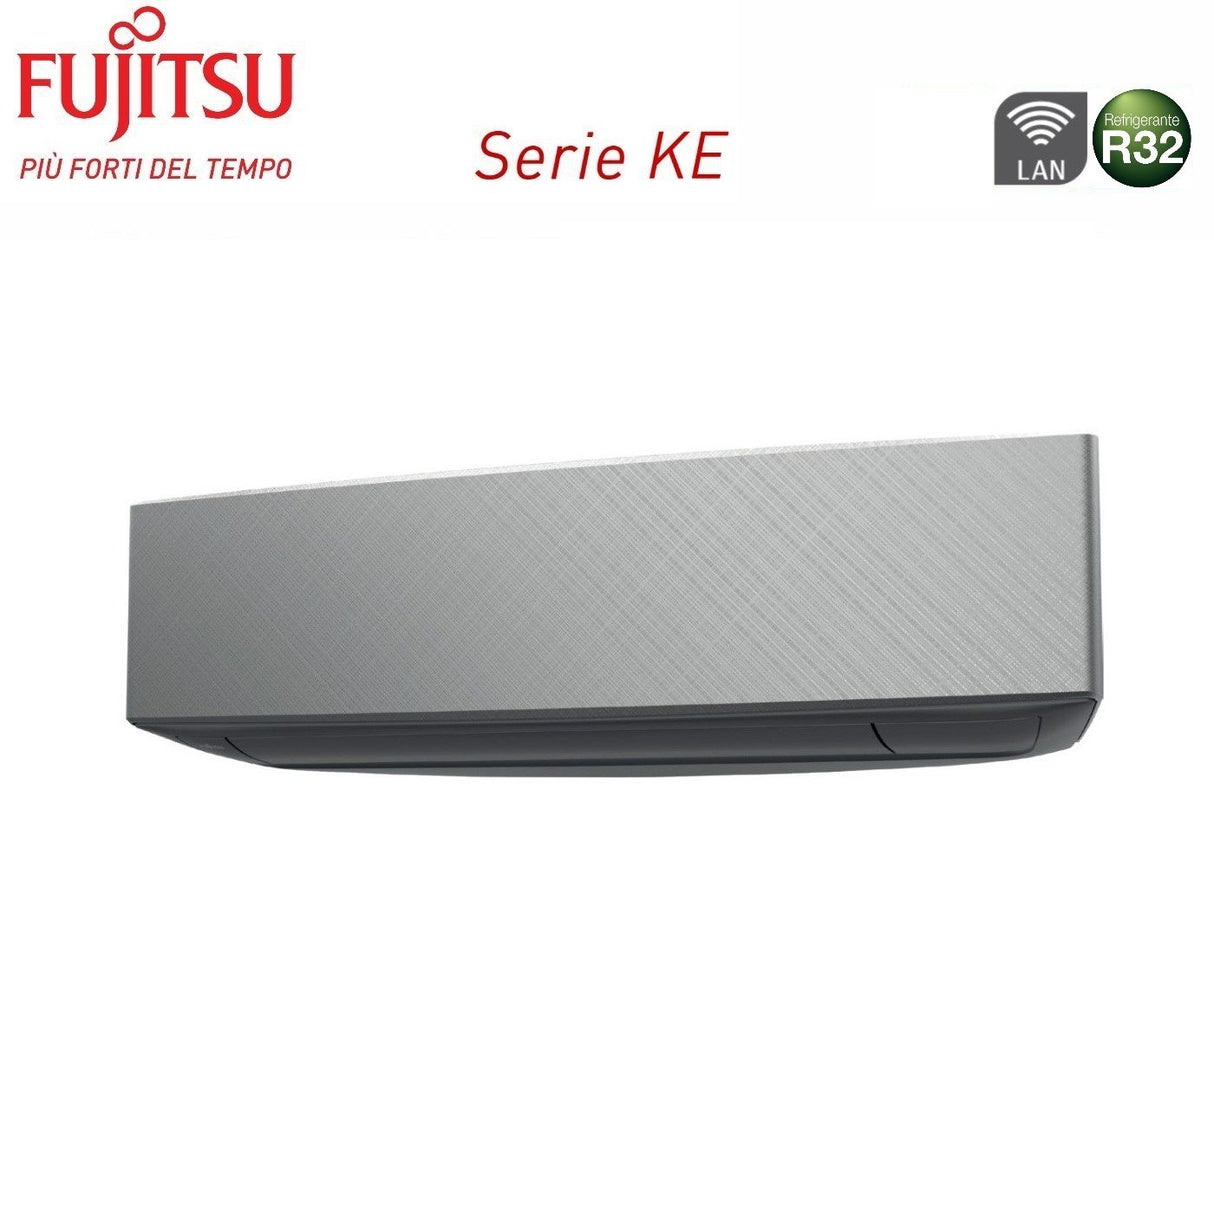 immagine-3-fujitsu-climatizzatore-condizionatore-fujitsu-trial-split-inverter-serie-ke-silver-91214-con-aoyg24kbta3-r-32-wi-fi-integrato-90001200014000-colore-bianco